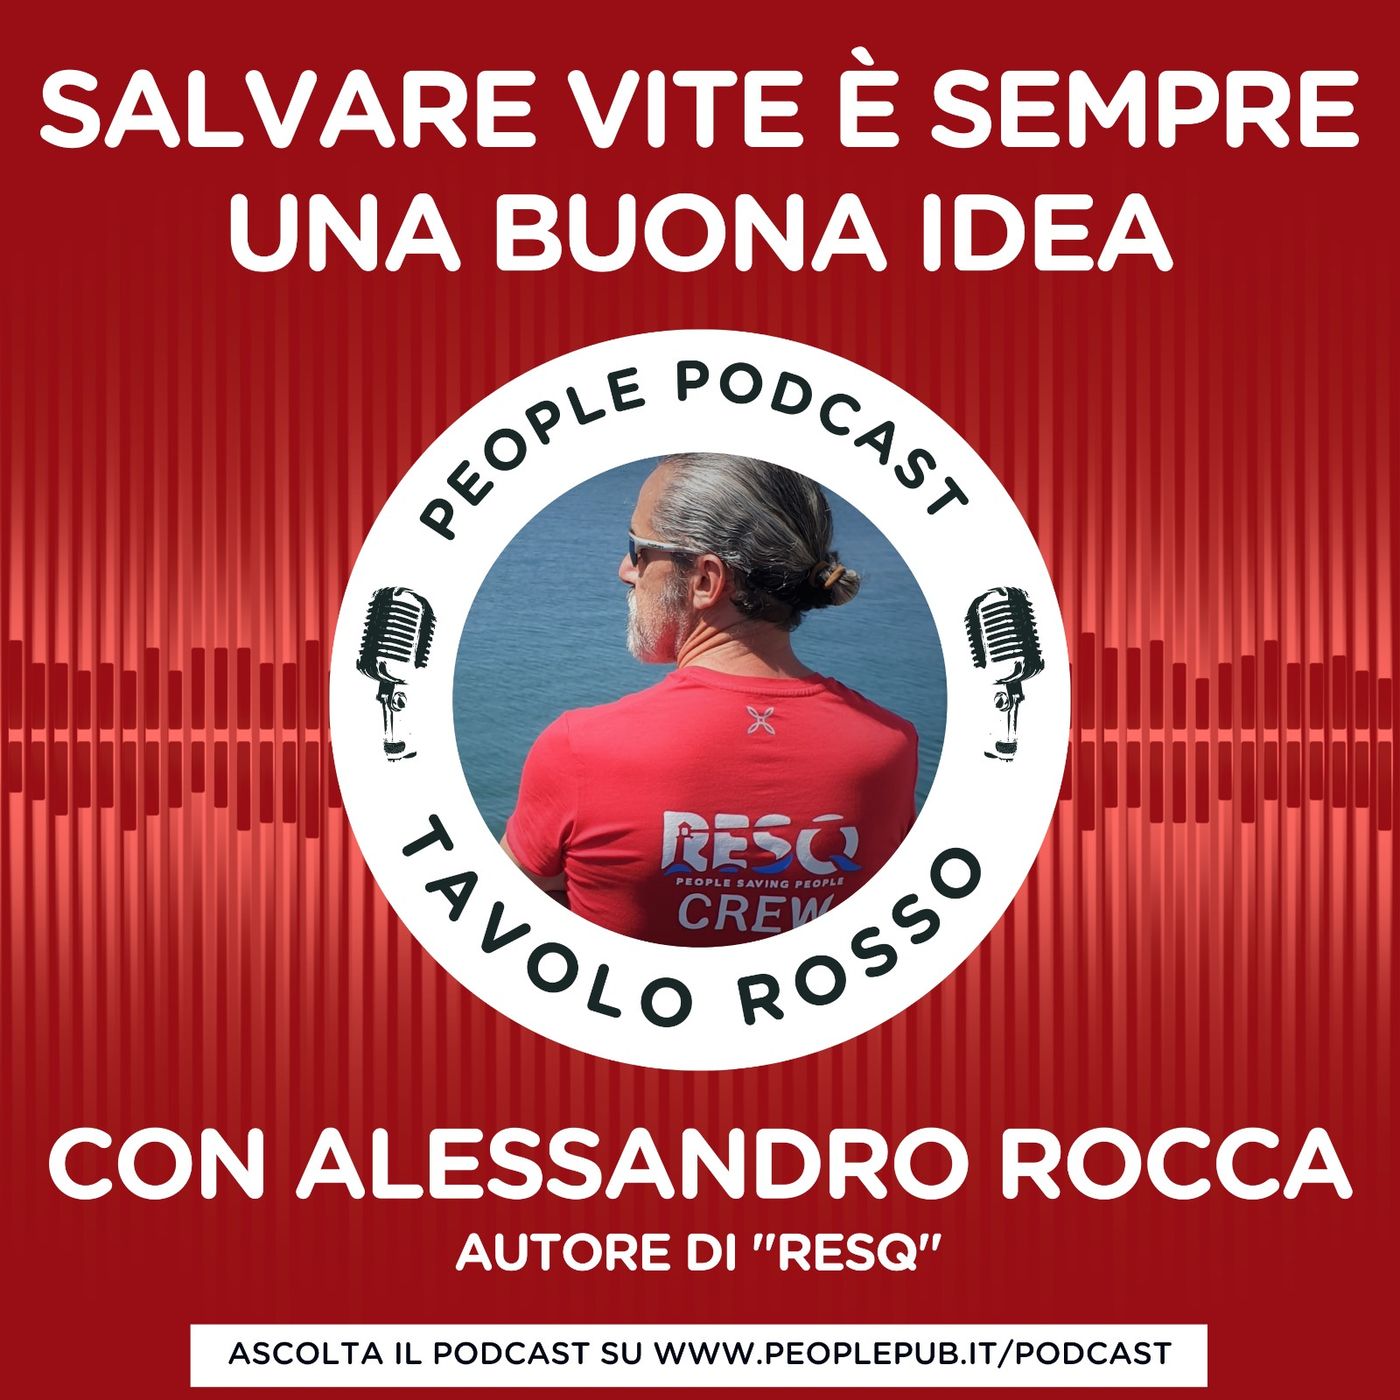 Salvare vite è sempre una buona idea - con Alessandro Rocca e Giuseppe Civati